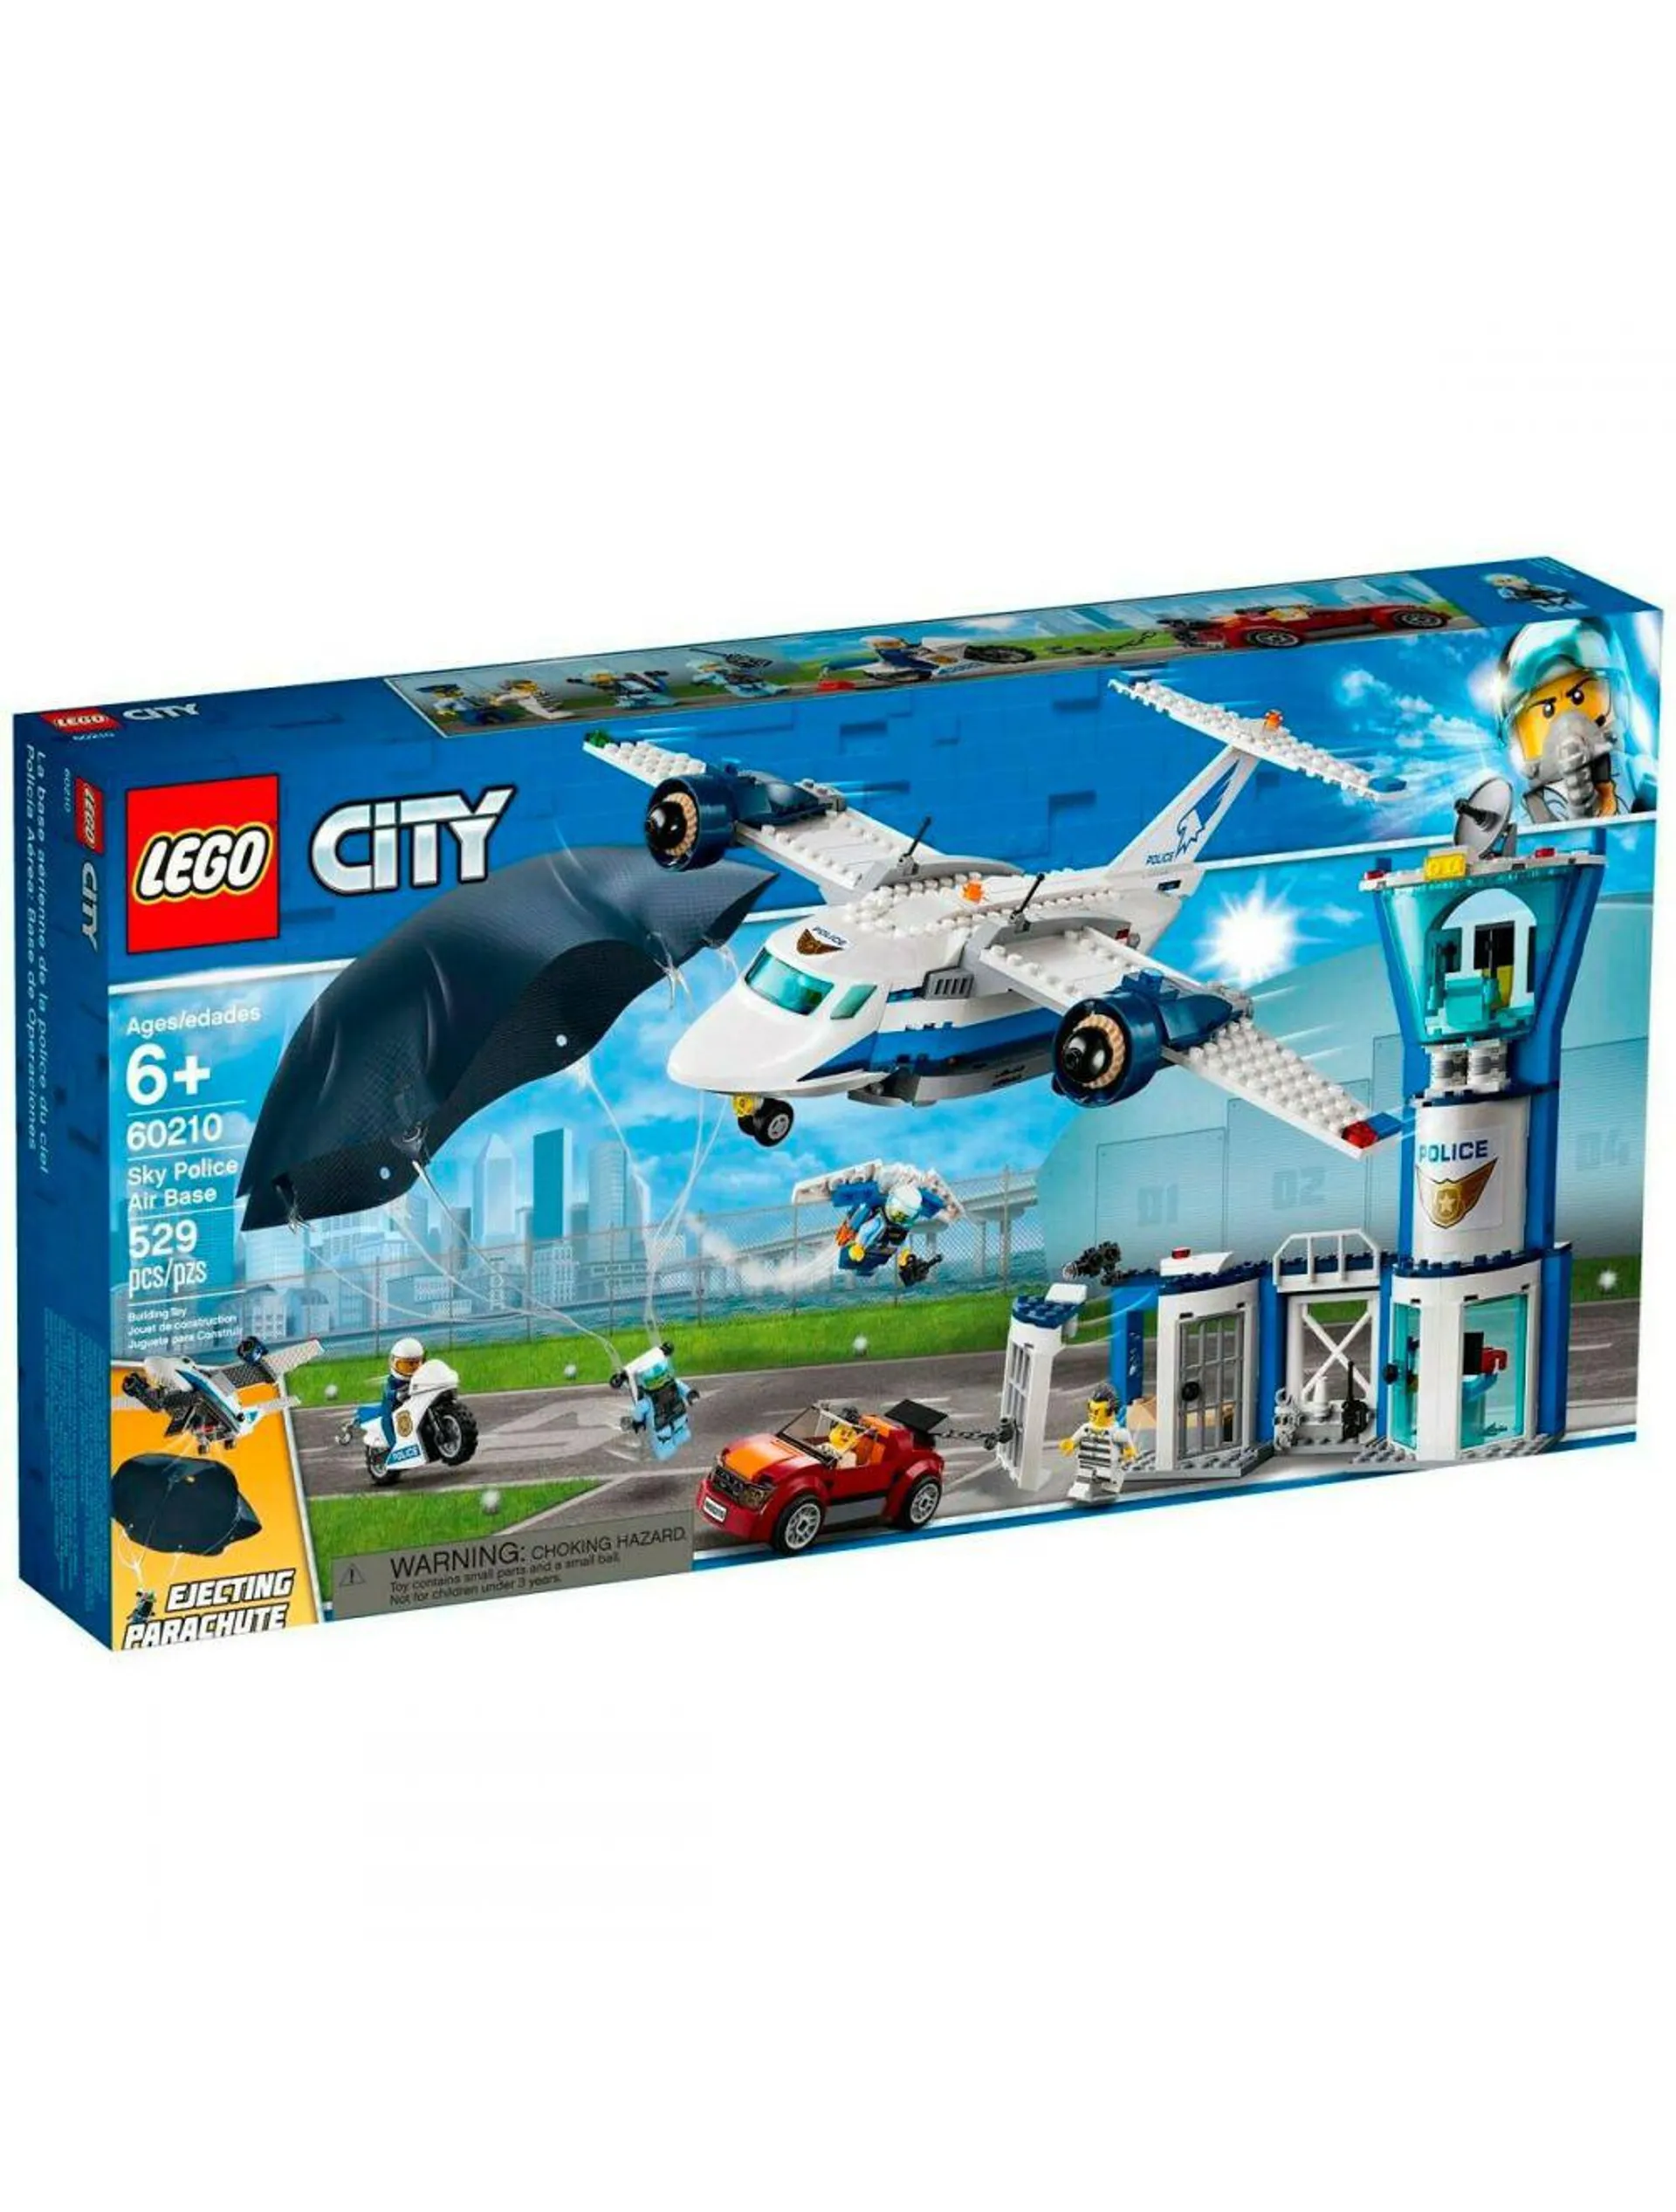 Lego City - Sky Police Air Base